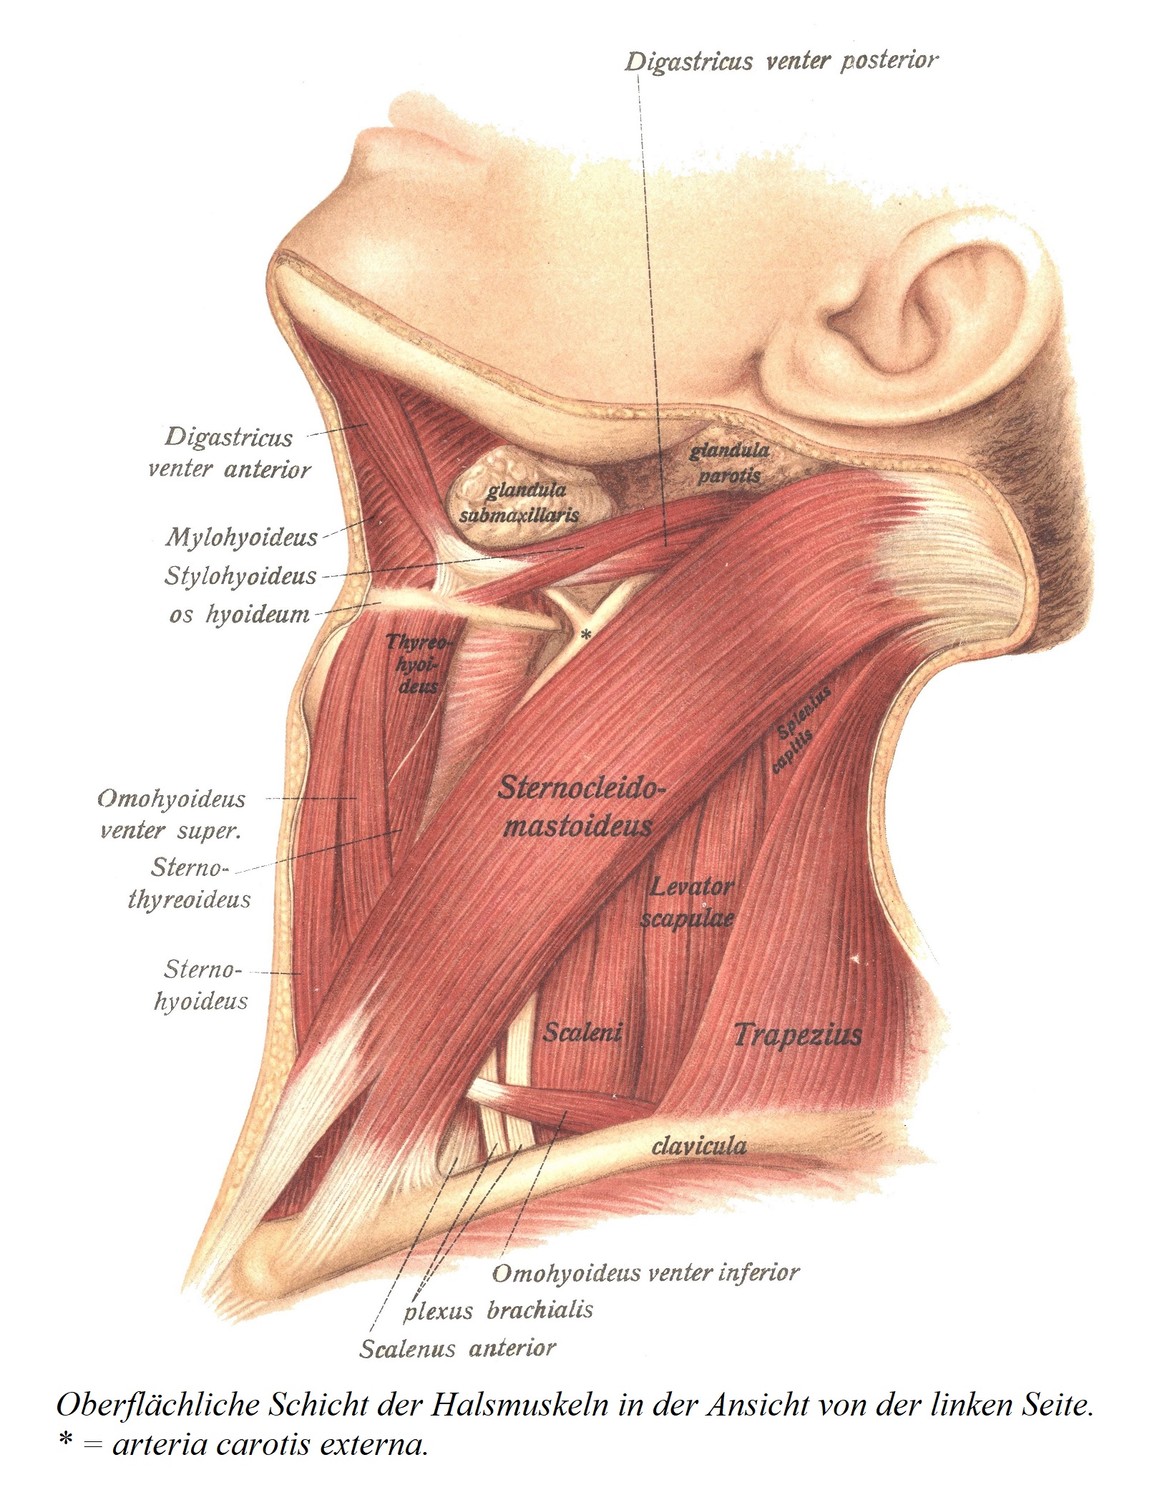 Поверхностный слой мышц шеи при осмотре слева. * = наружная сонная артерия.